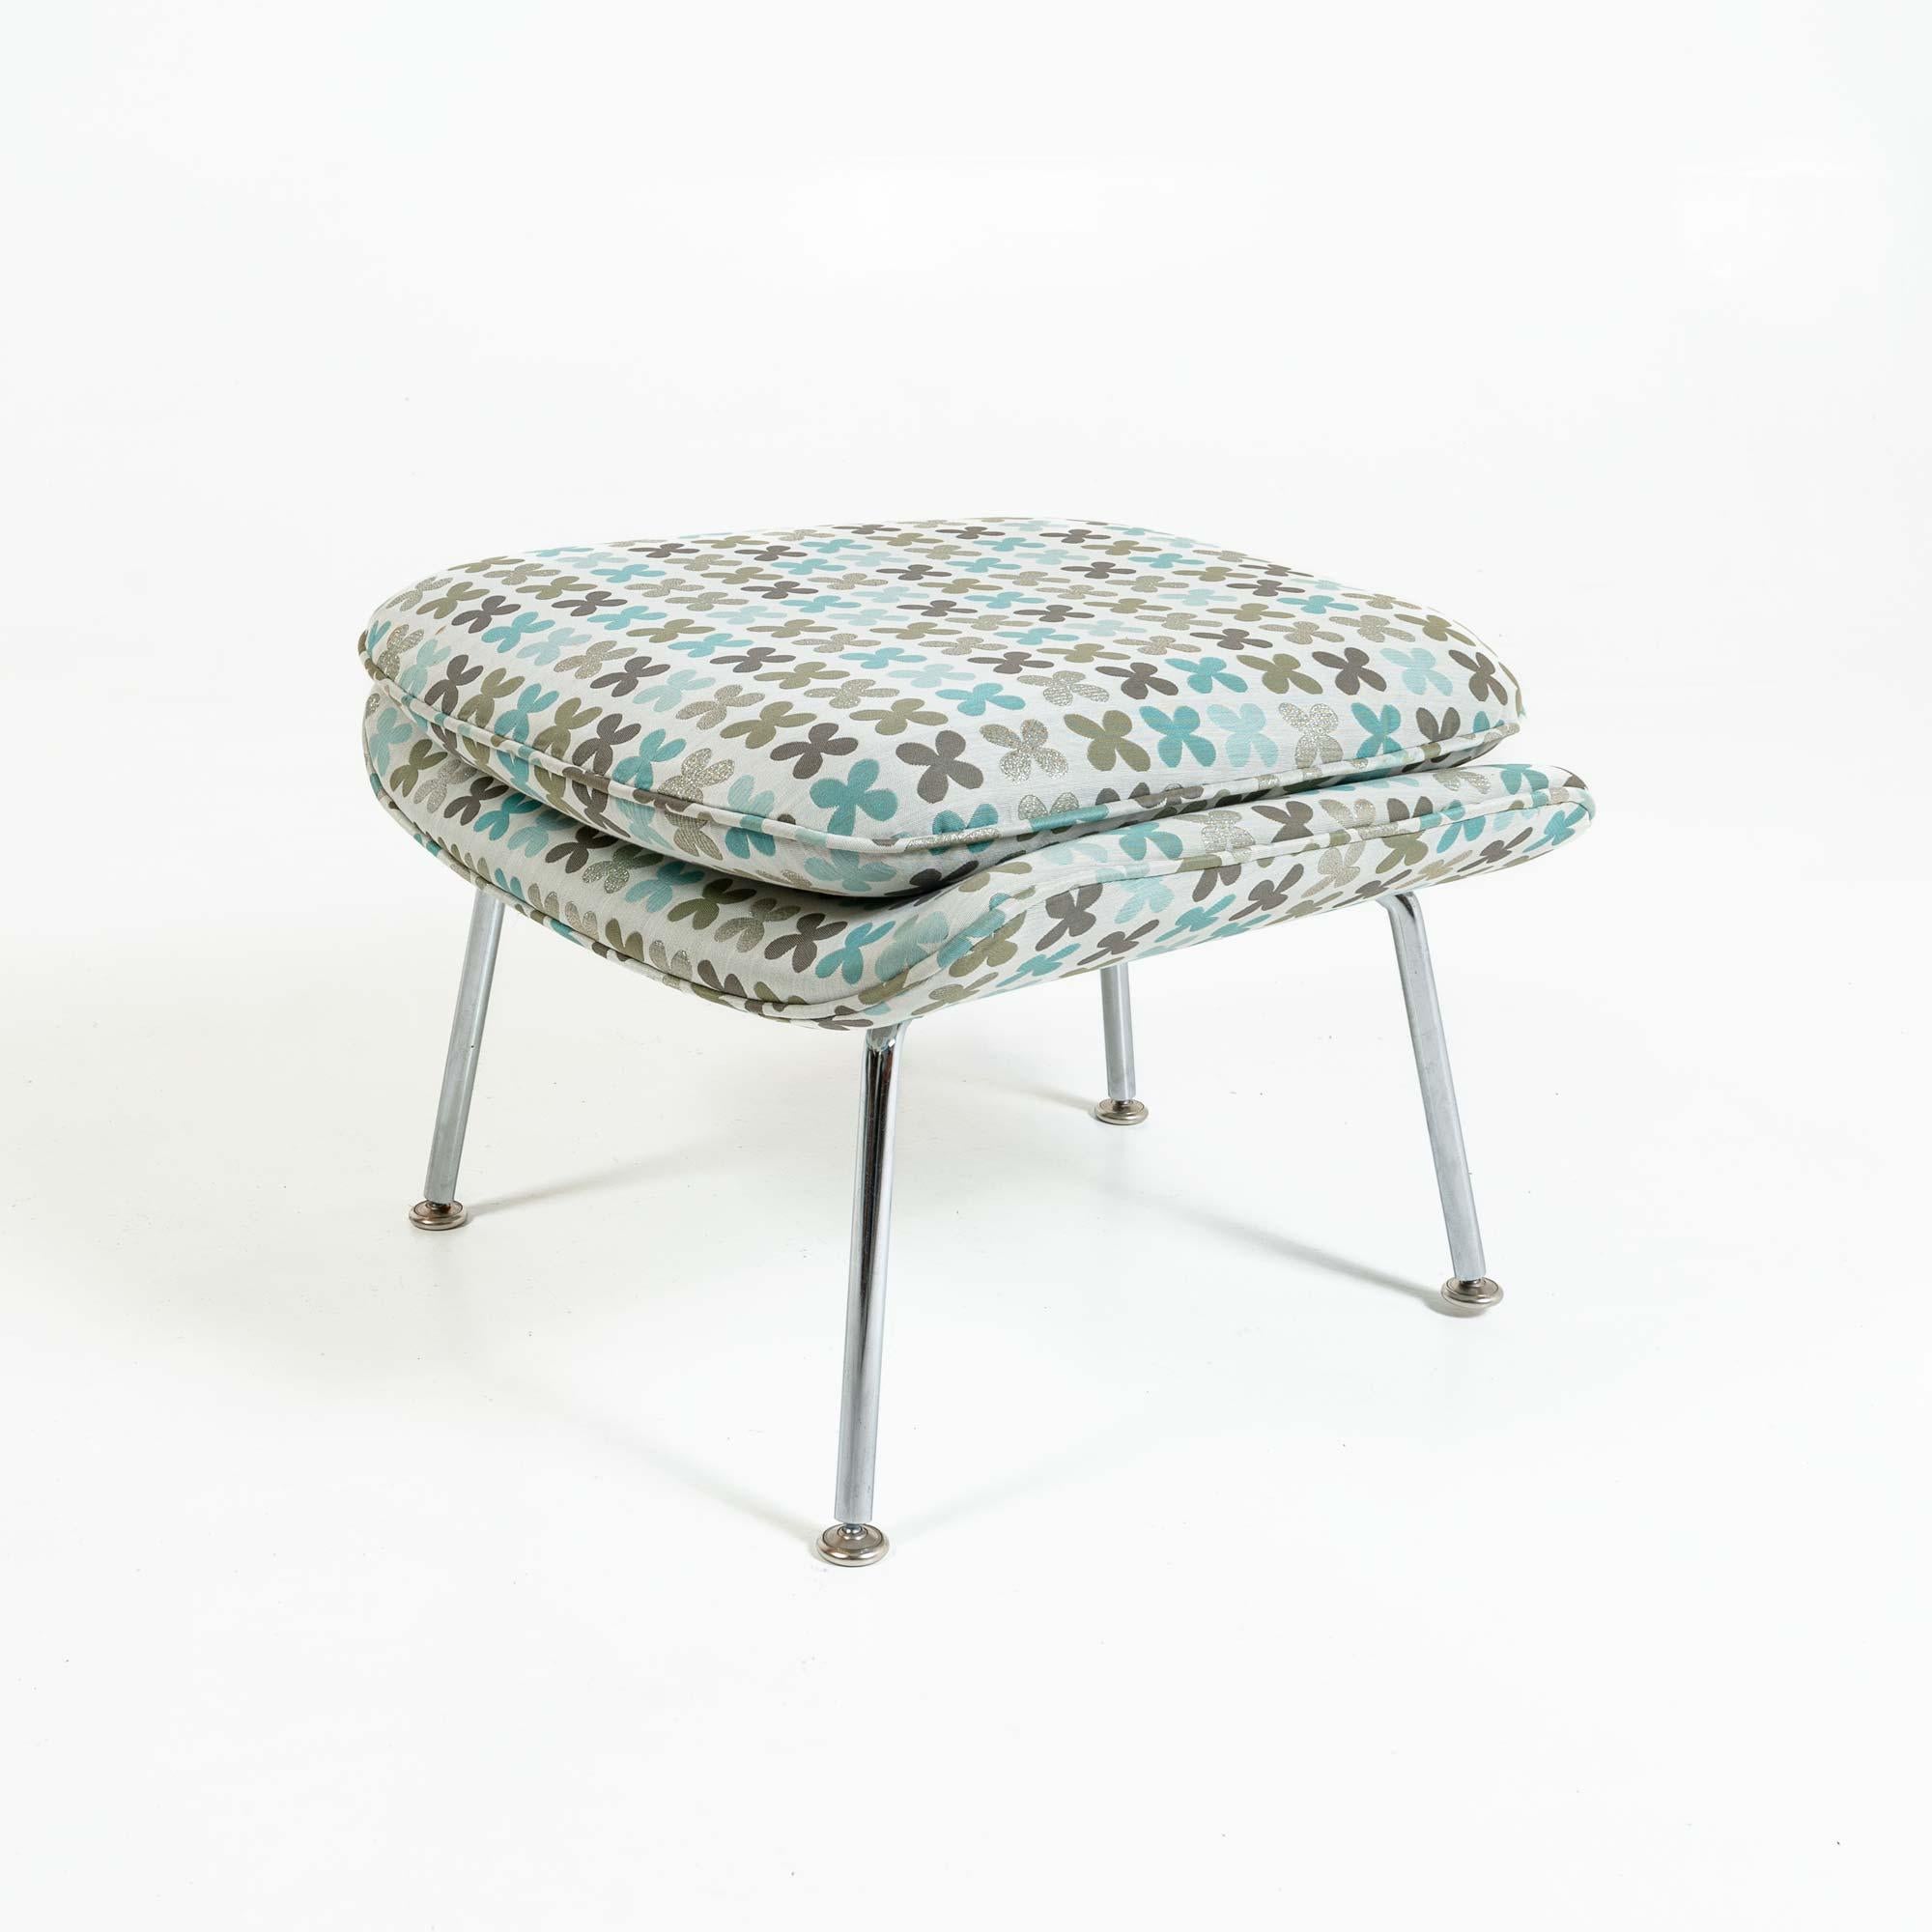 Eero Saarinen Womb Chair & Ottoman Medium in Alexander Girard Quatrefoil Fabric  For Sale 1